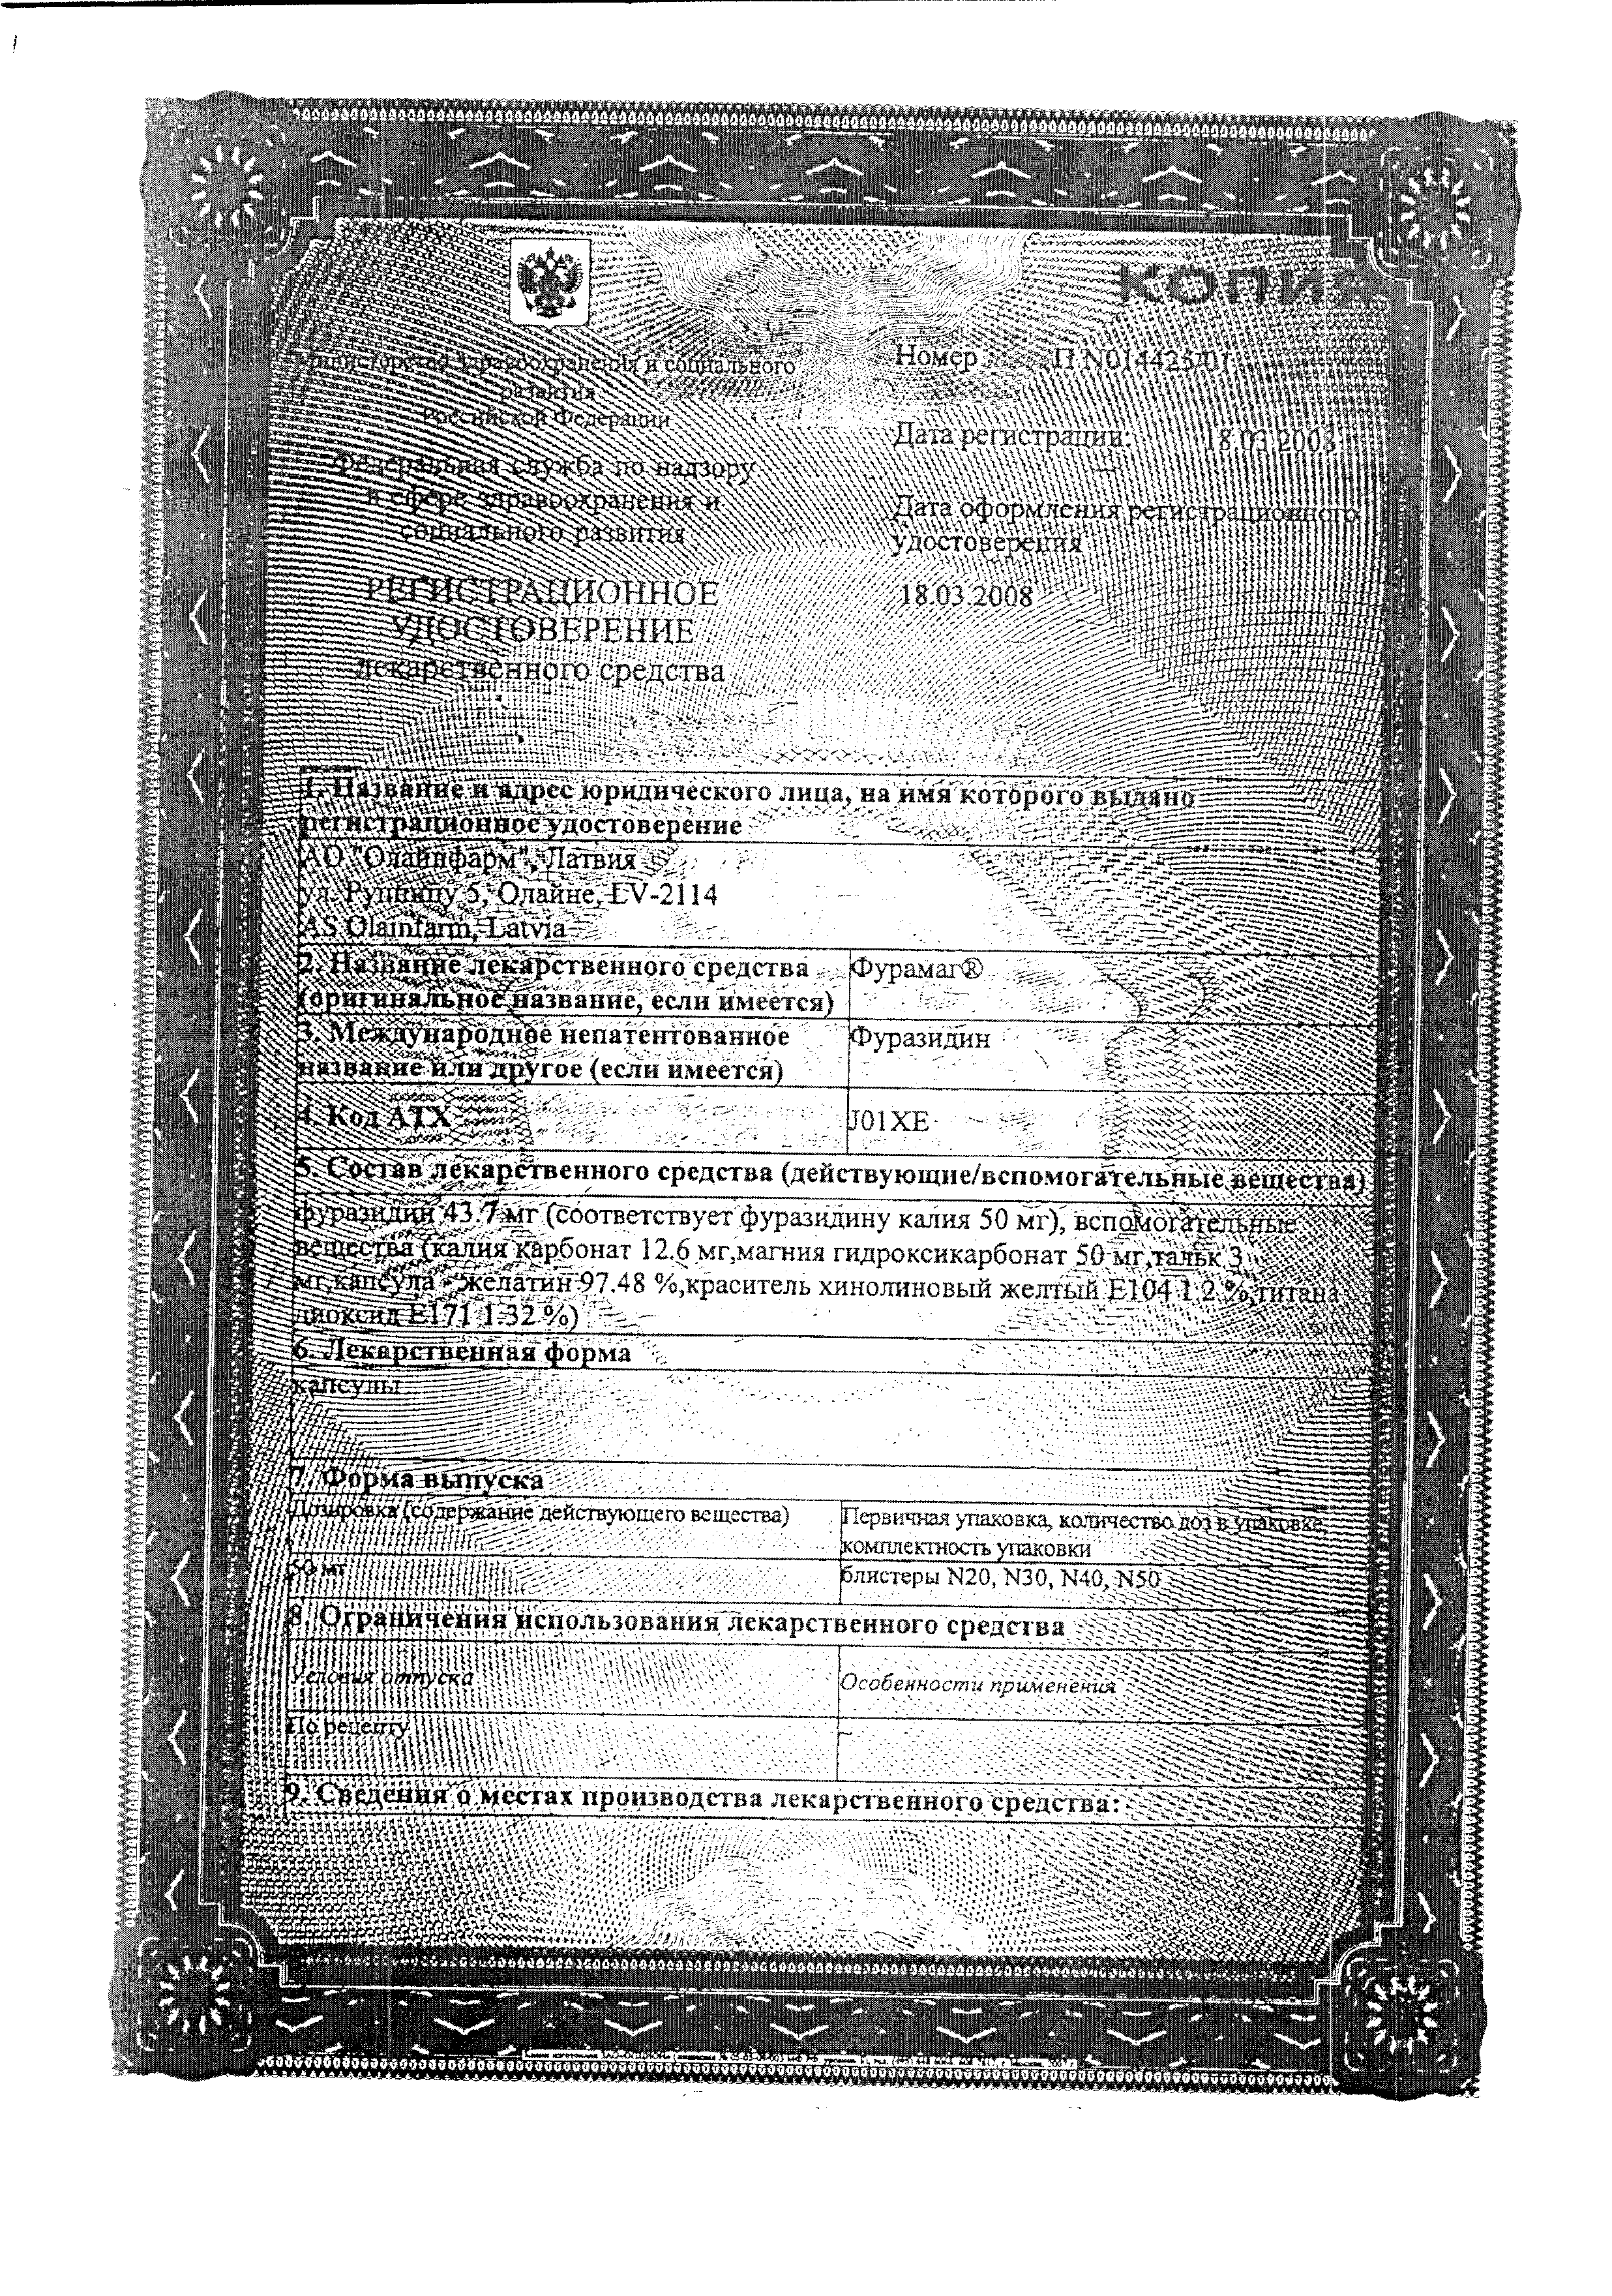 Фурамаг сертификат